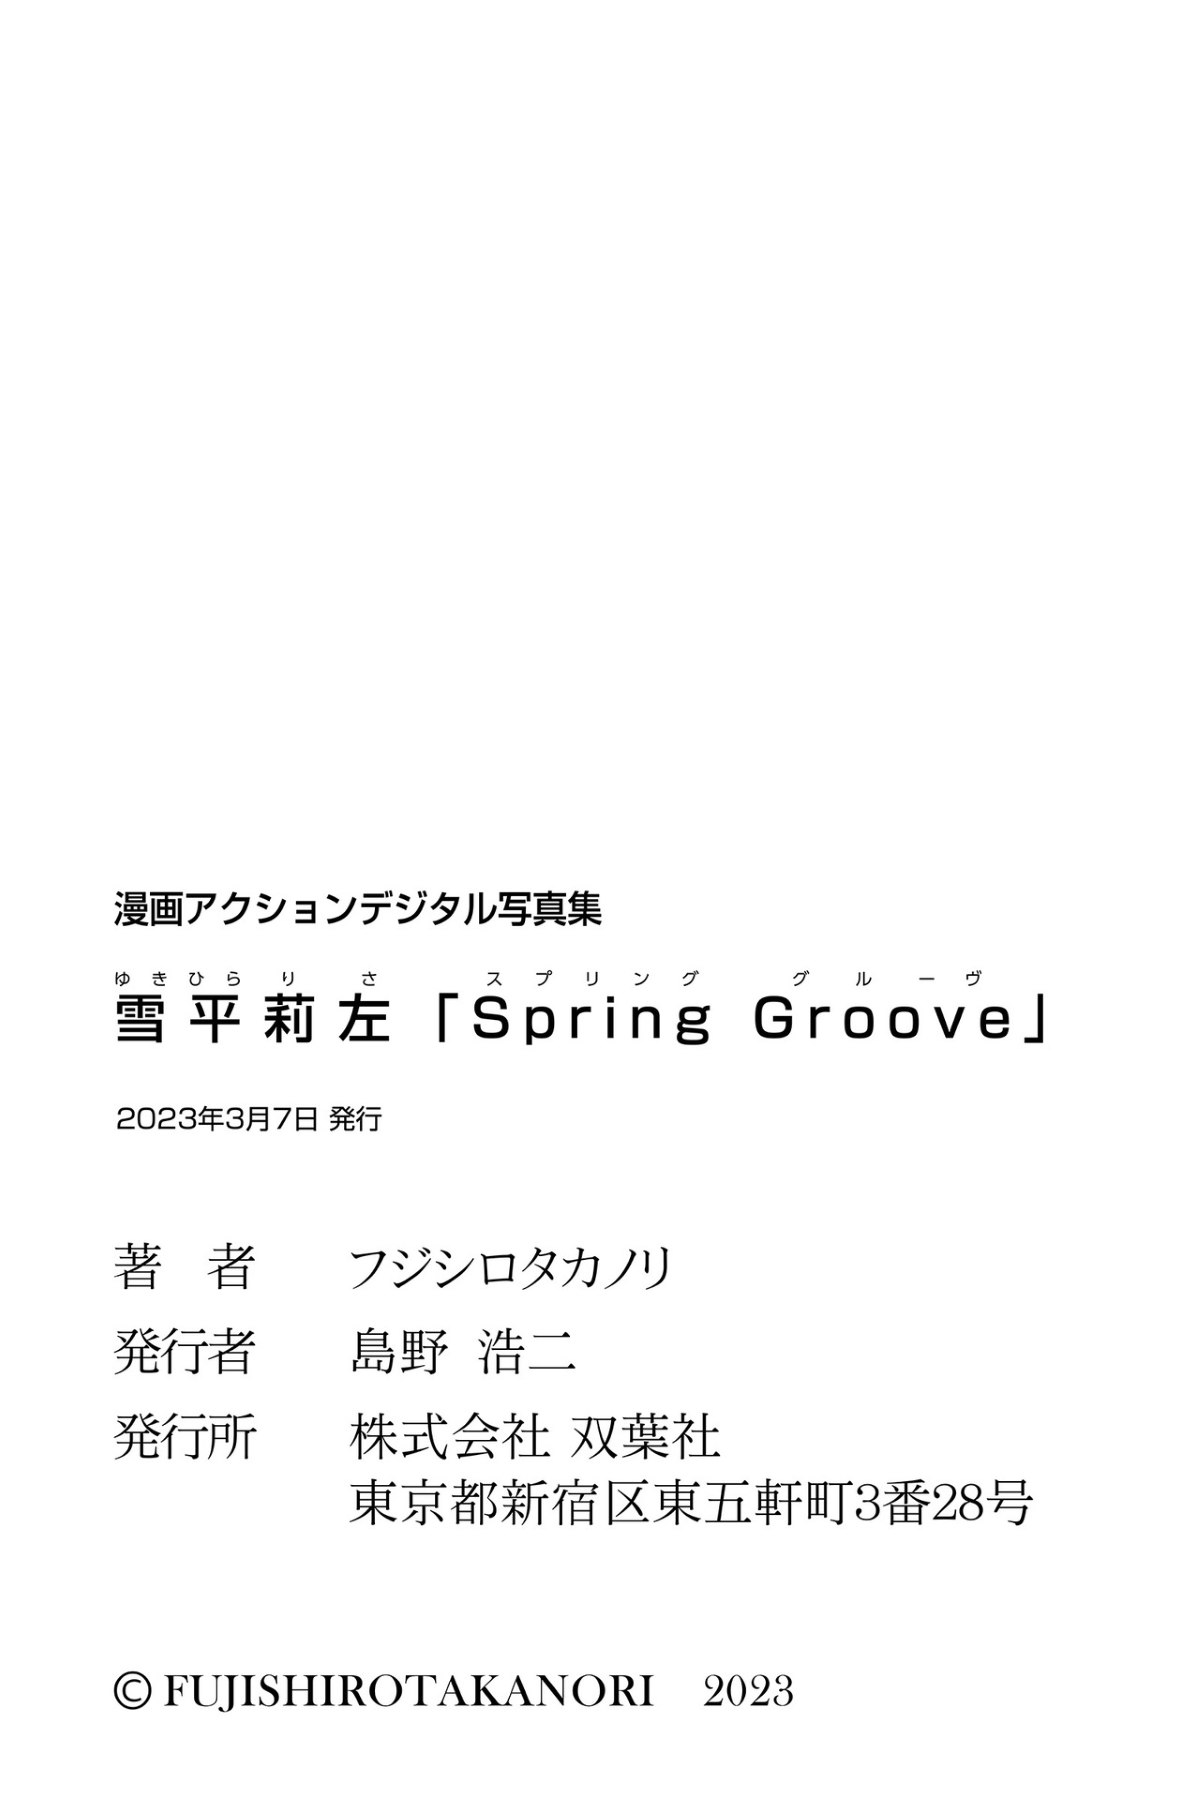 Photobook Manga Action Digital Photobook 2023 03 07 Risa Yukihira 雪平莉左 Spring Groove 0048 3727337053.jpg